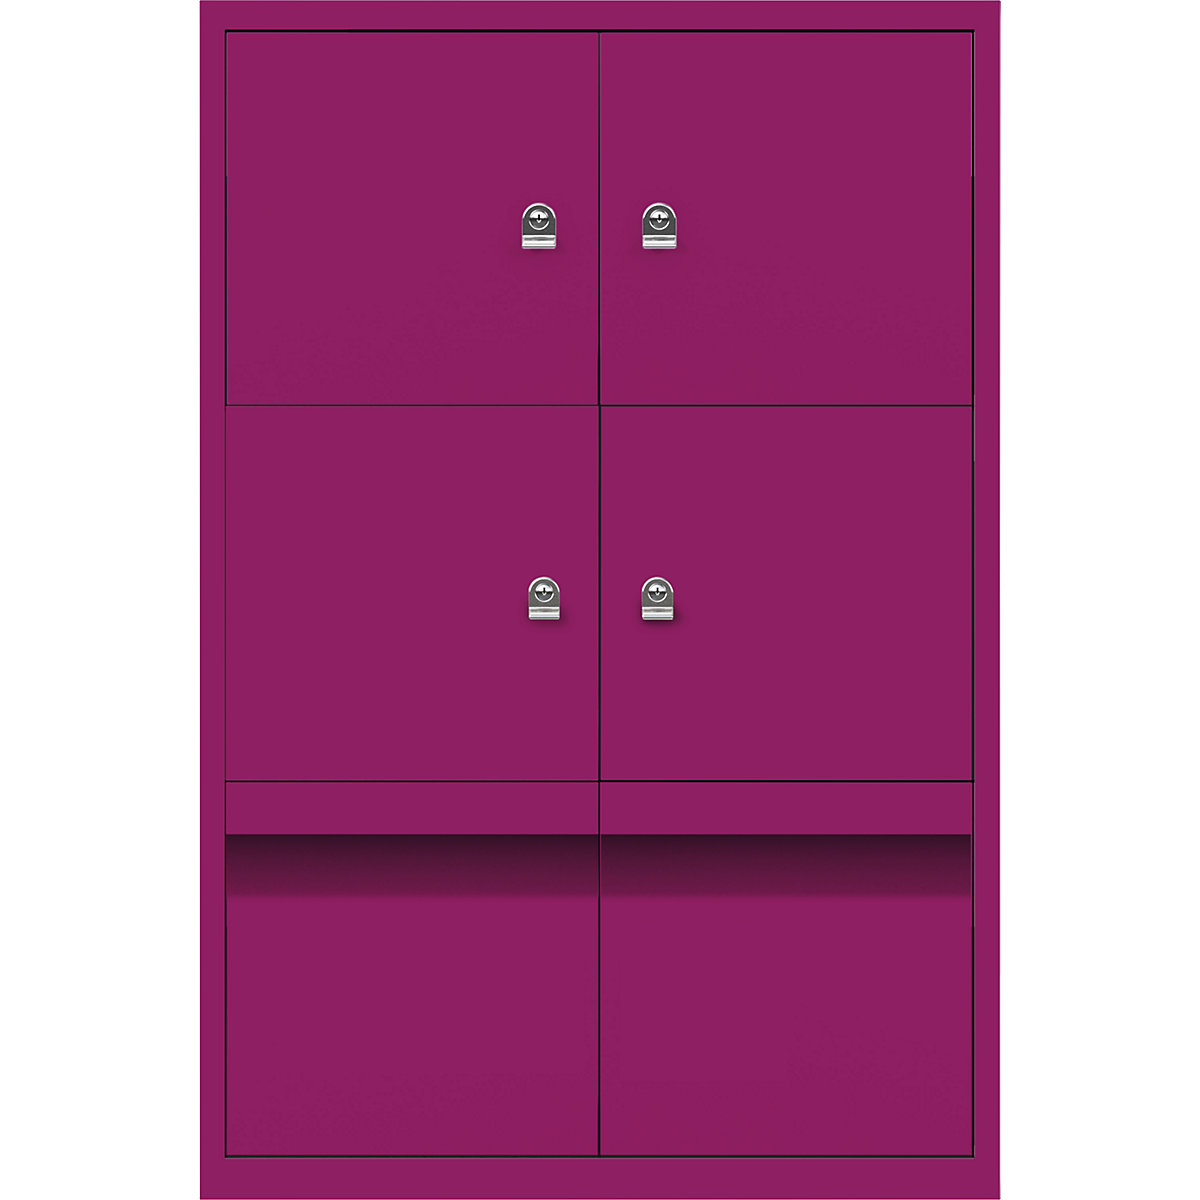 Ormar LateralFile™ Lodge – BISLEY, s 4 pretinca sa zaključavanjem i 2 ladice, visina po 375 mm, u fuksija ružičastoj boji-21